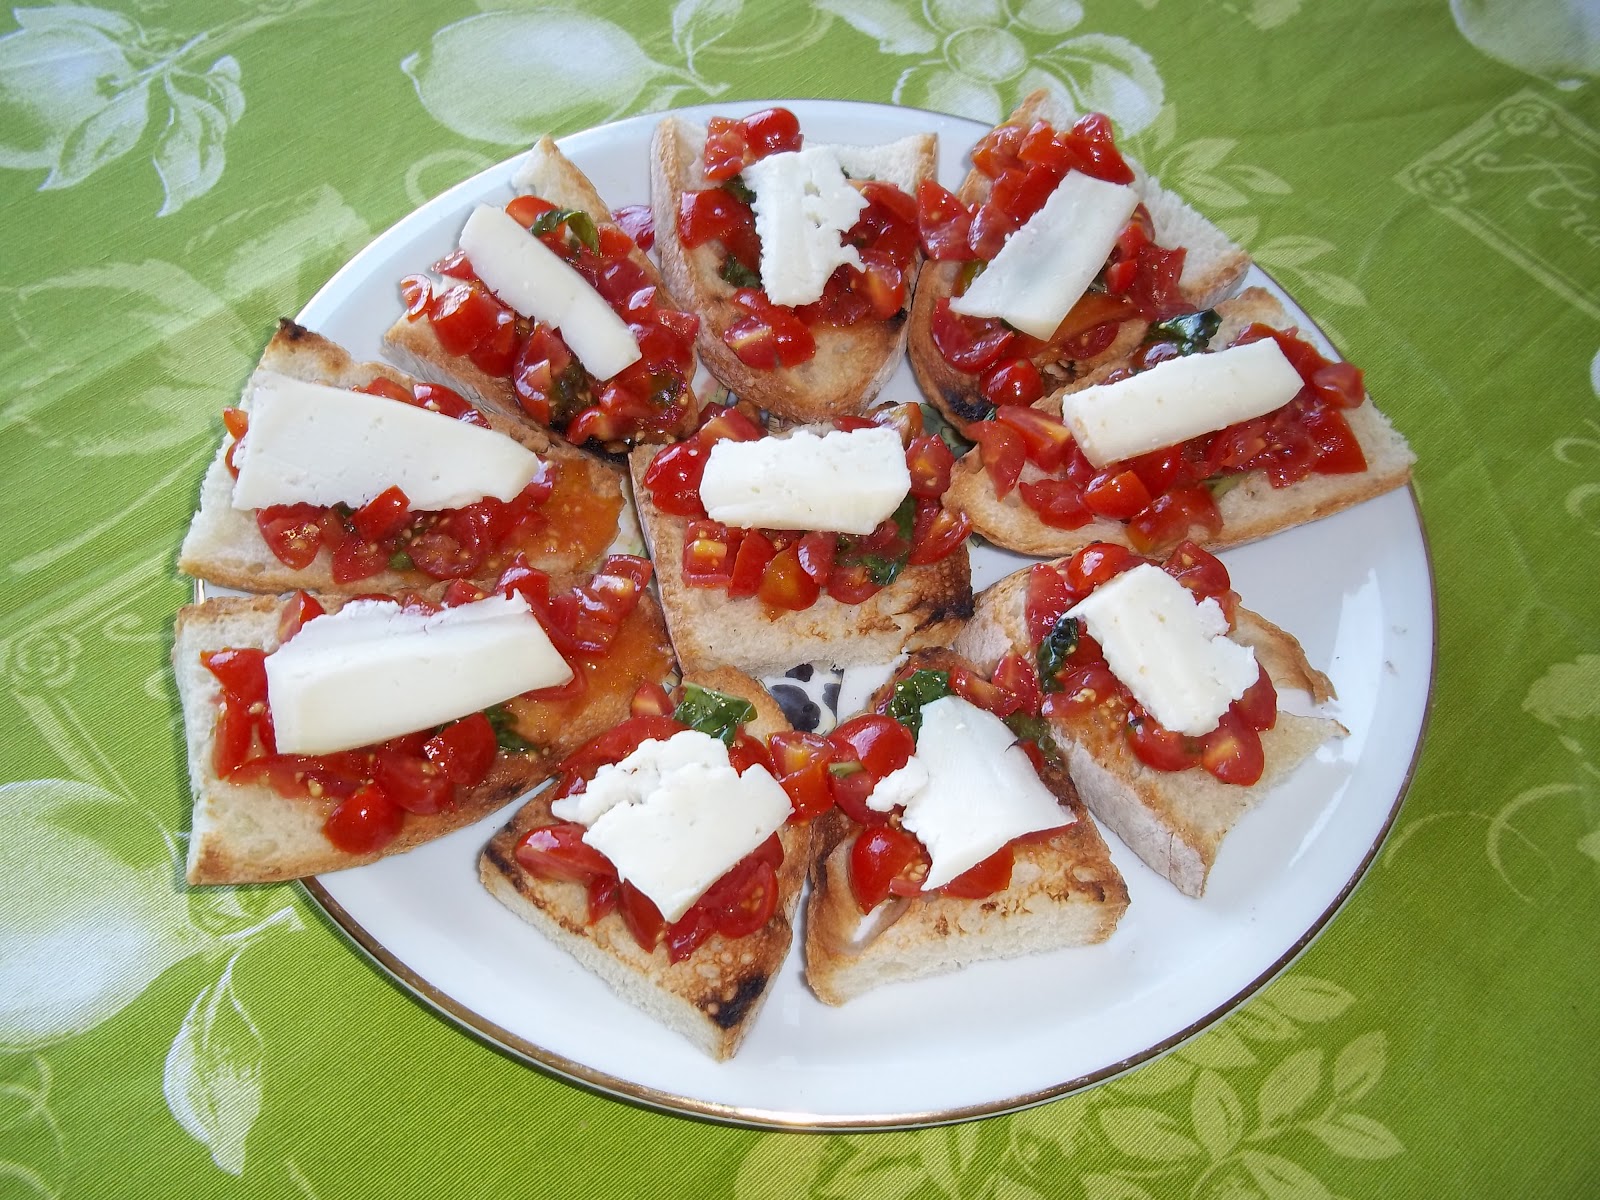 sapori&amp;saperi: bruschetta al pomodoro - bruschetta con tomate